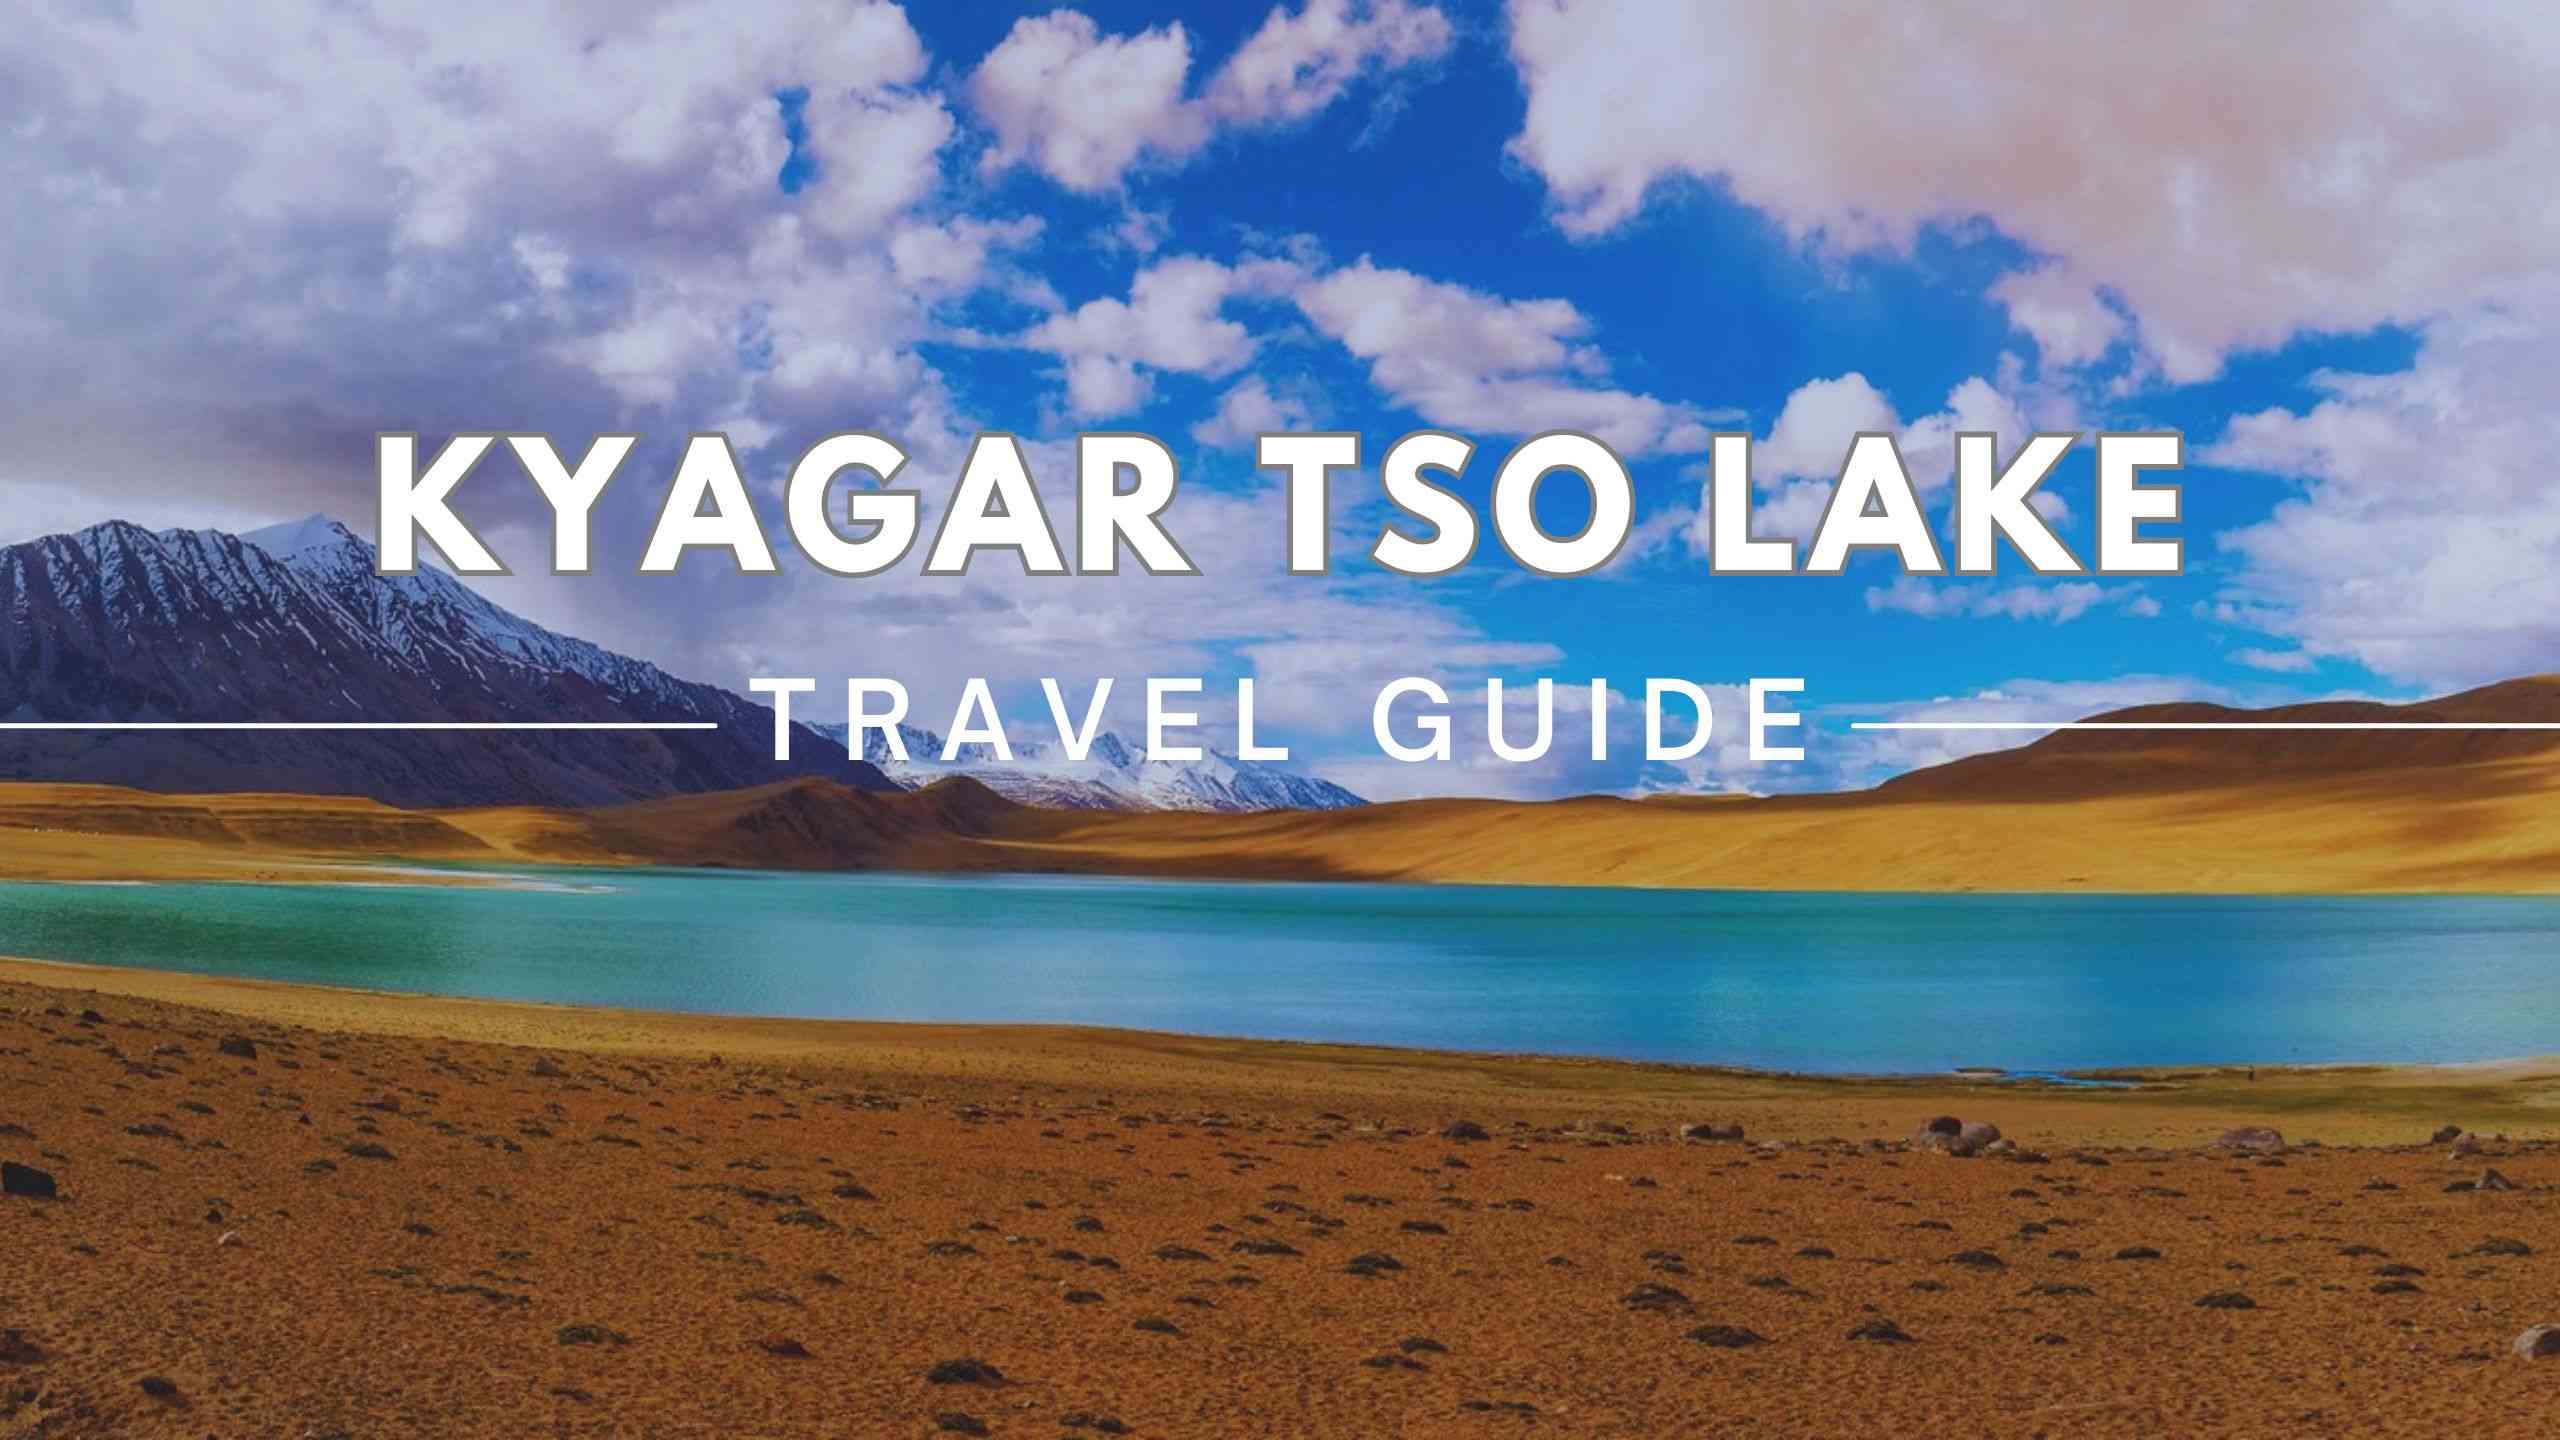 Kyagar Tso Lake Image